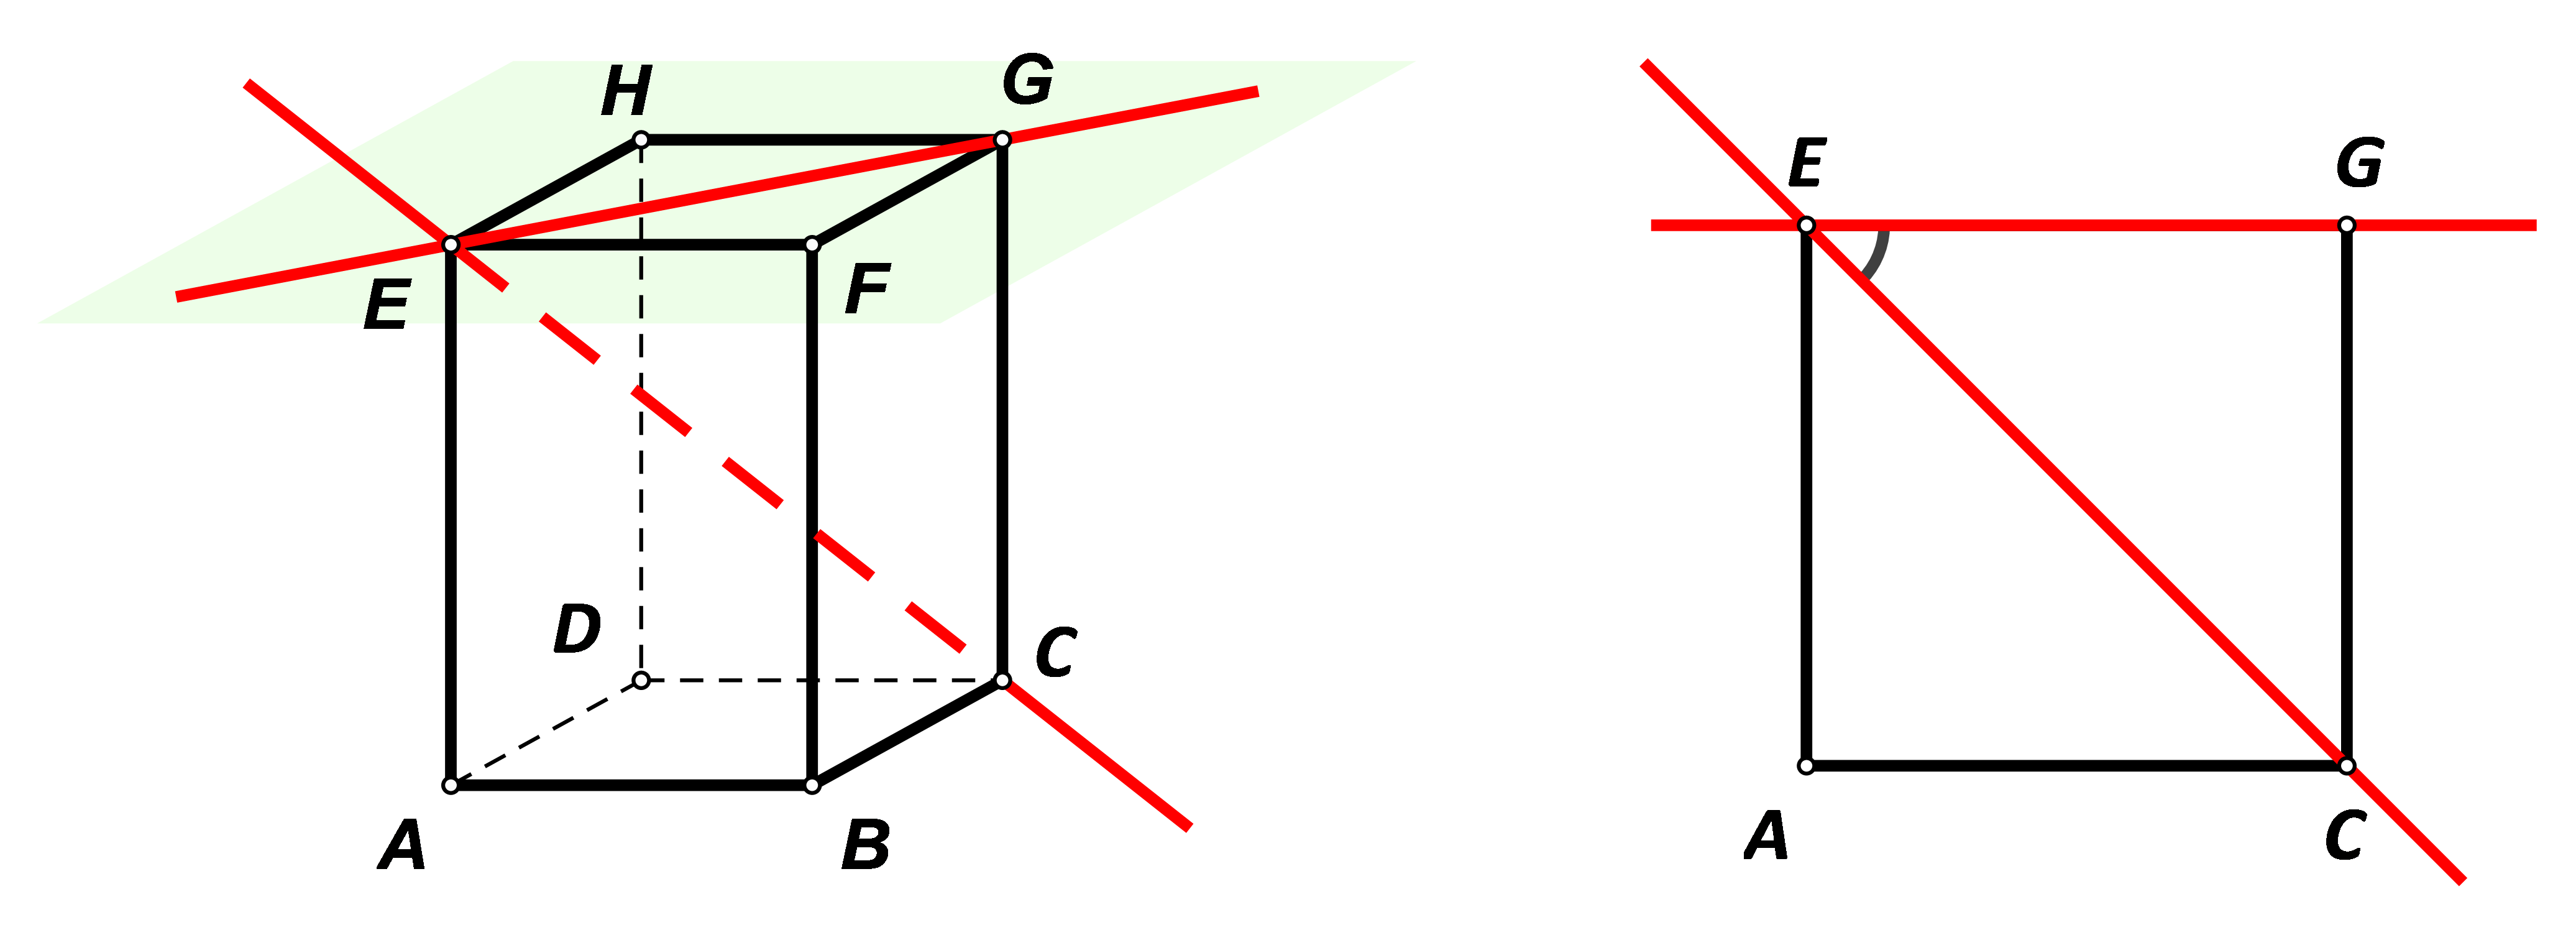 Prva slika prikazuje kvadar ABCDEFGH, pravac CE i ravninu FGH te ortogonalnu projekciju pravca CE na zadanu ravninu. Druga slika prikazuje kut pravca i ravnine.